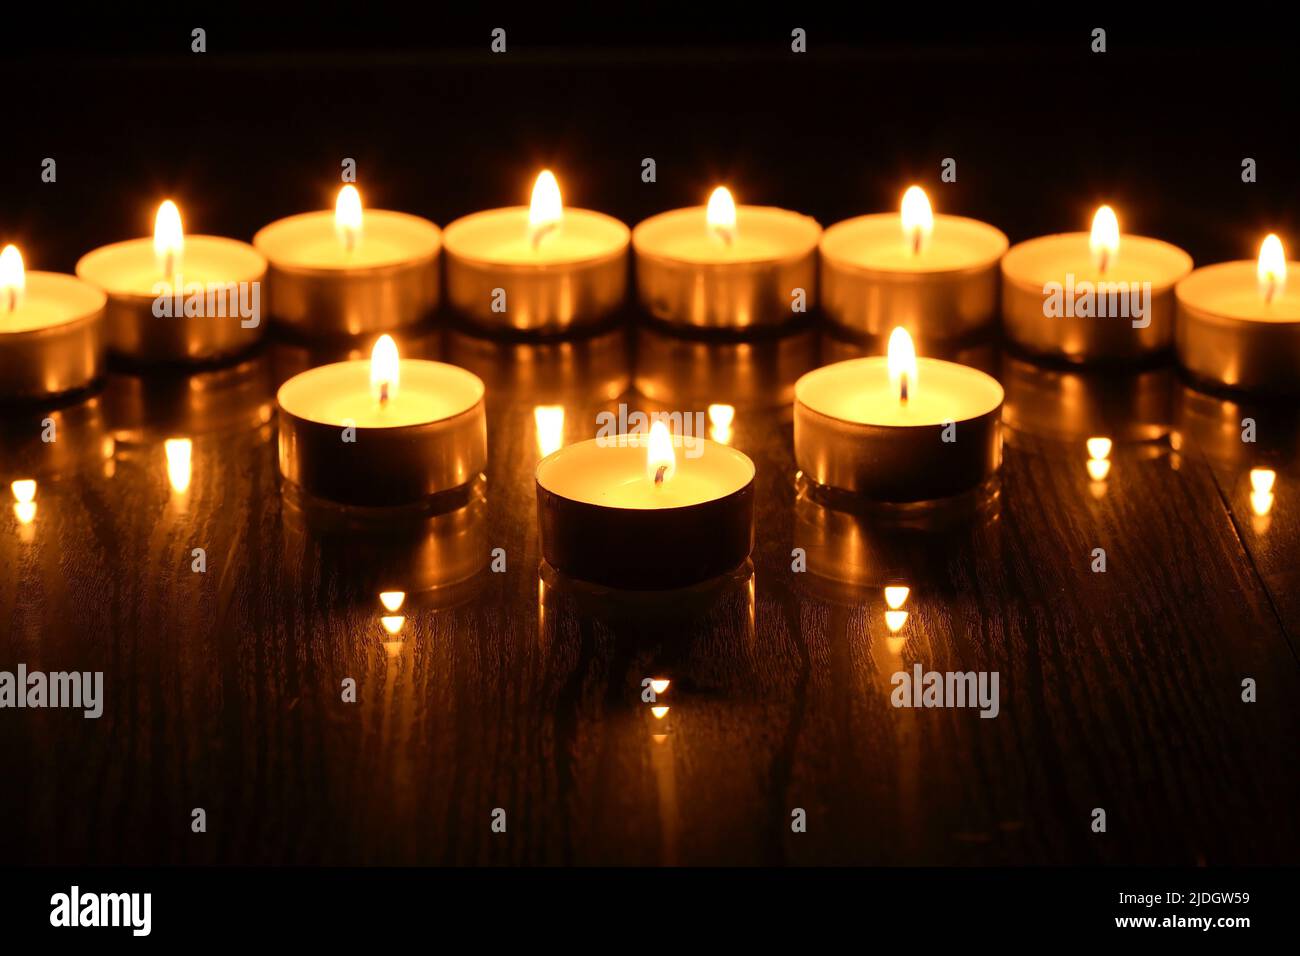 Juego de velas en espiral en una fila contra fondo oscuro Foto de stock